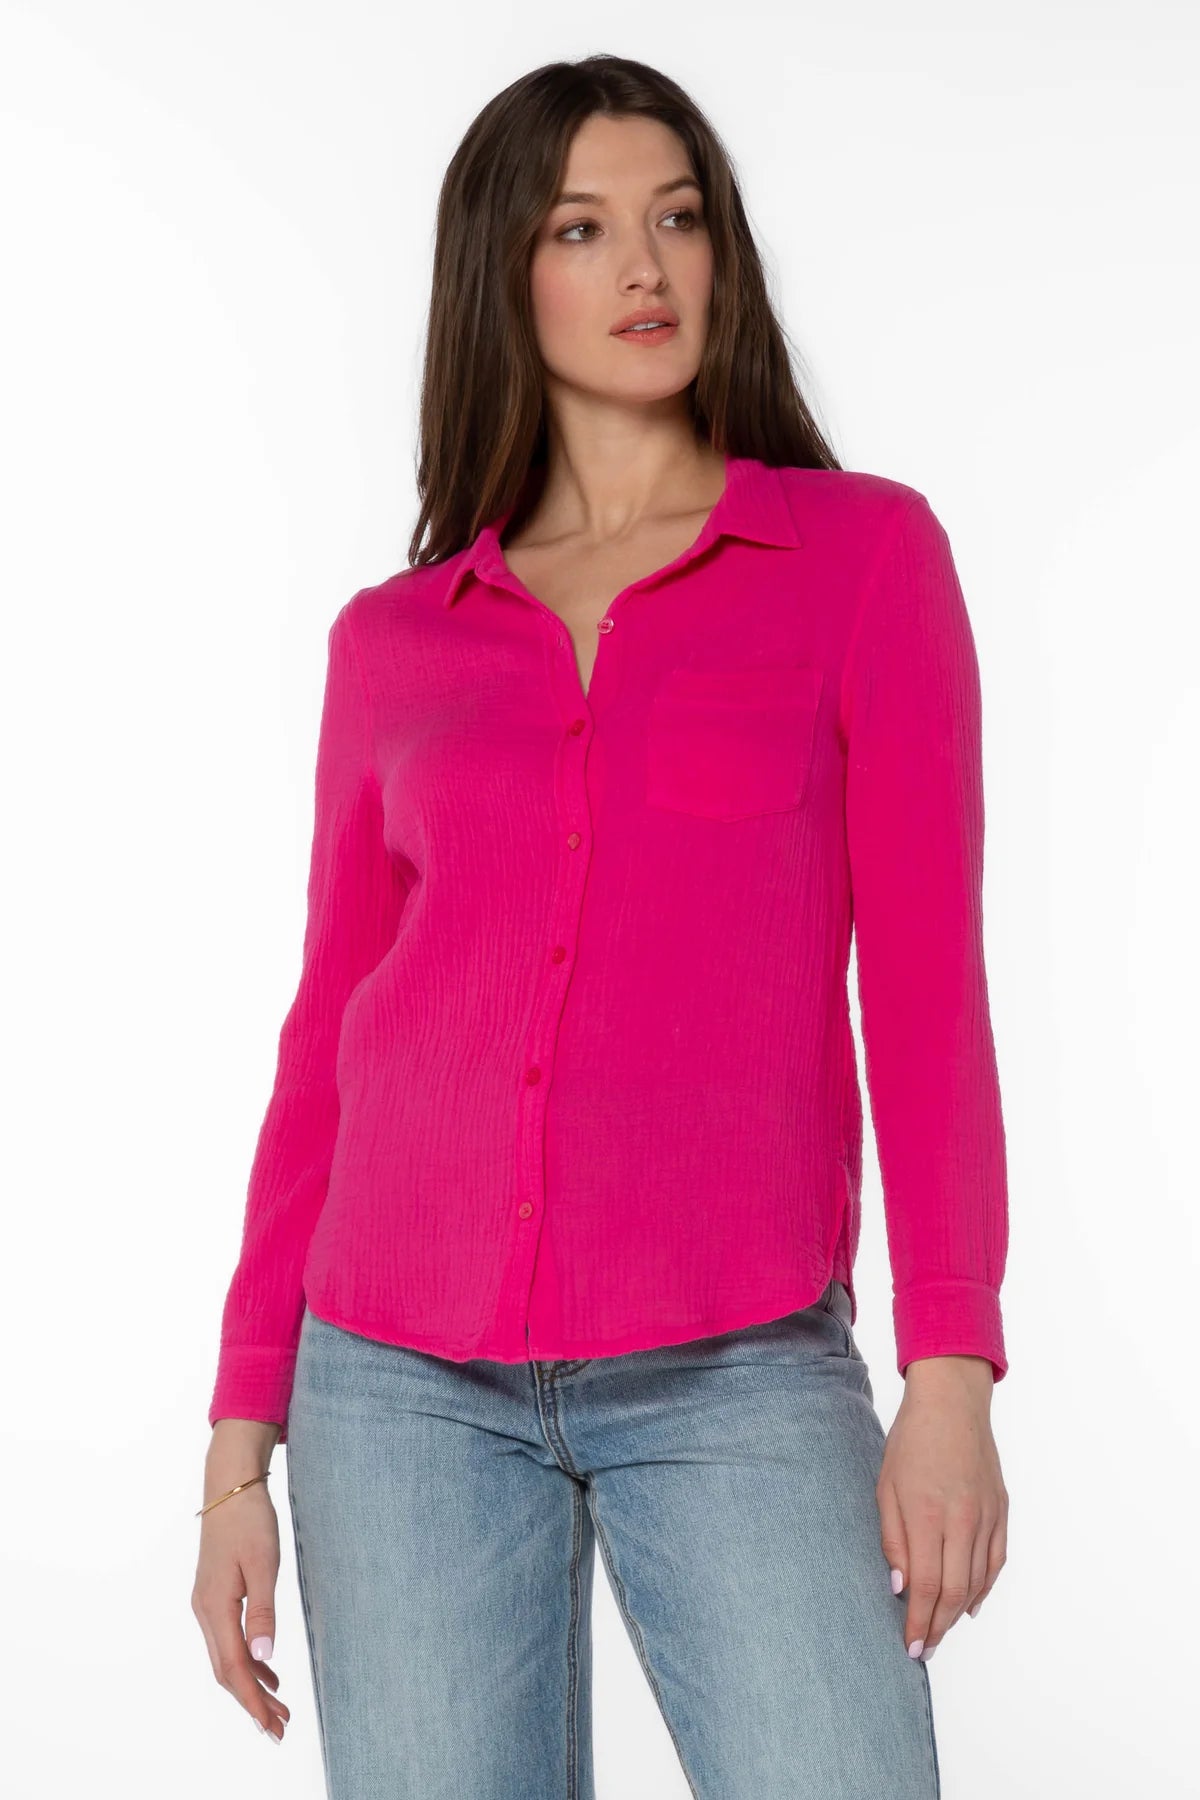 Bennett Shirt - Hot Pink